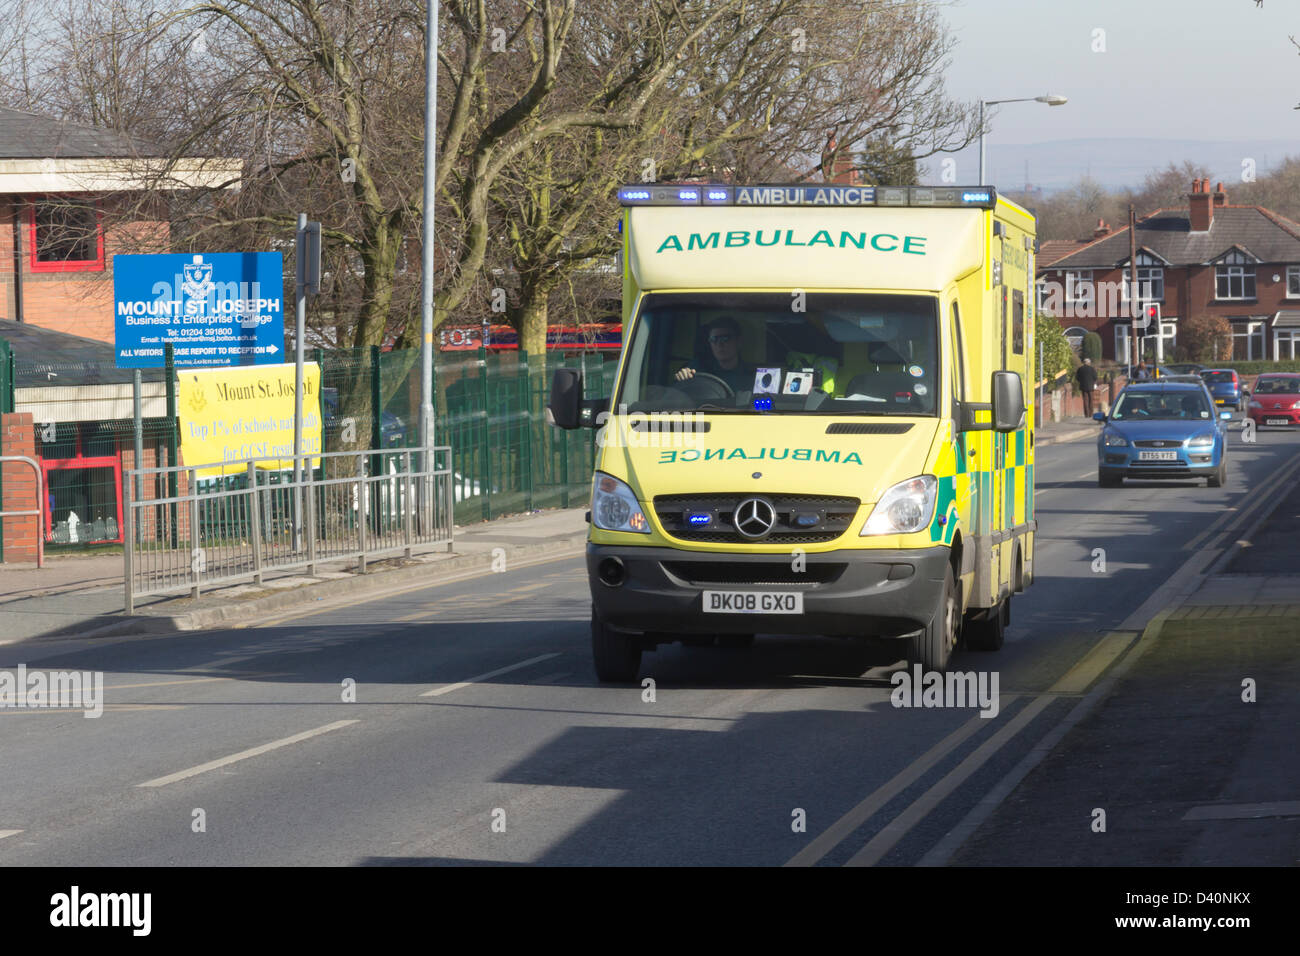 Royal bolton hospital,Lancashire. Il 28 febbraio 2013. ambulanza con luce blu lampeggiante luci su strada minerva avvicinandosi al royal bolton hospital. Foto Stock